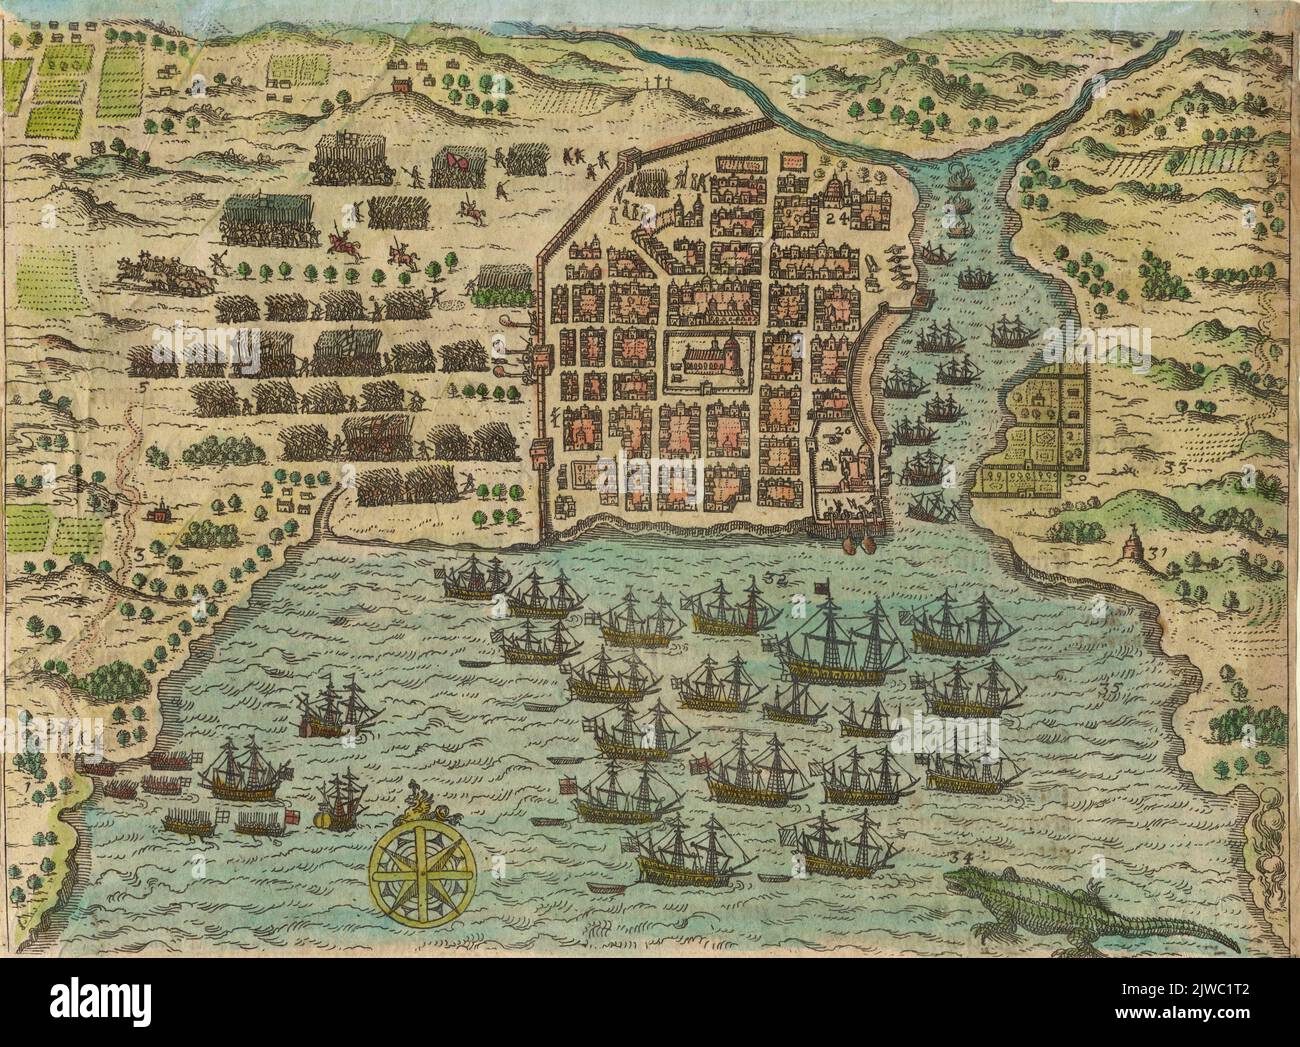 Bildhafte Kartenansicht von Santo Domingo auf der Insel Hispaniola um 1585-1586, Handkoloriert. Theodor de Bry Stockfoto